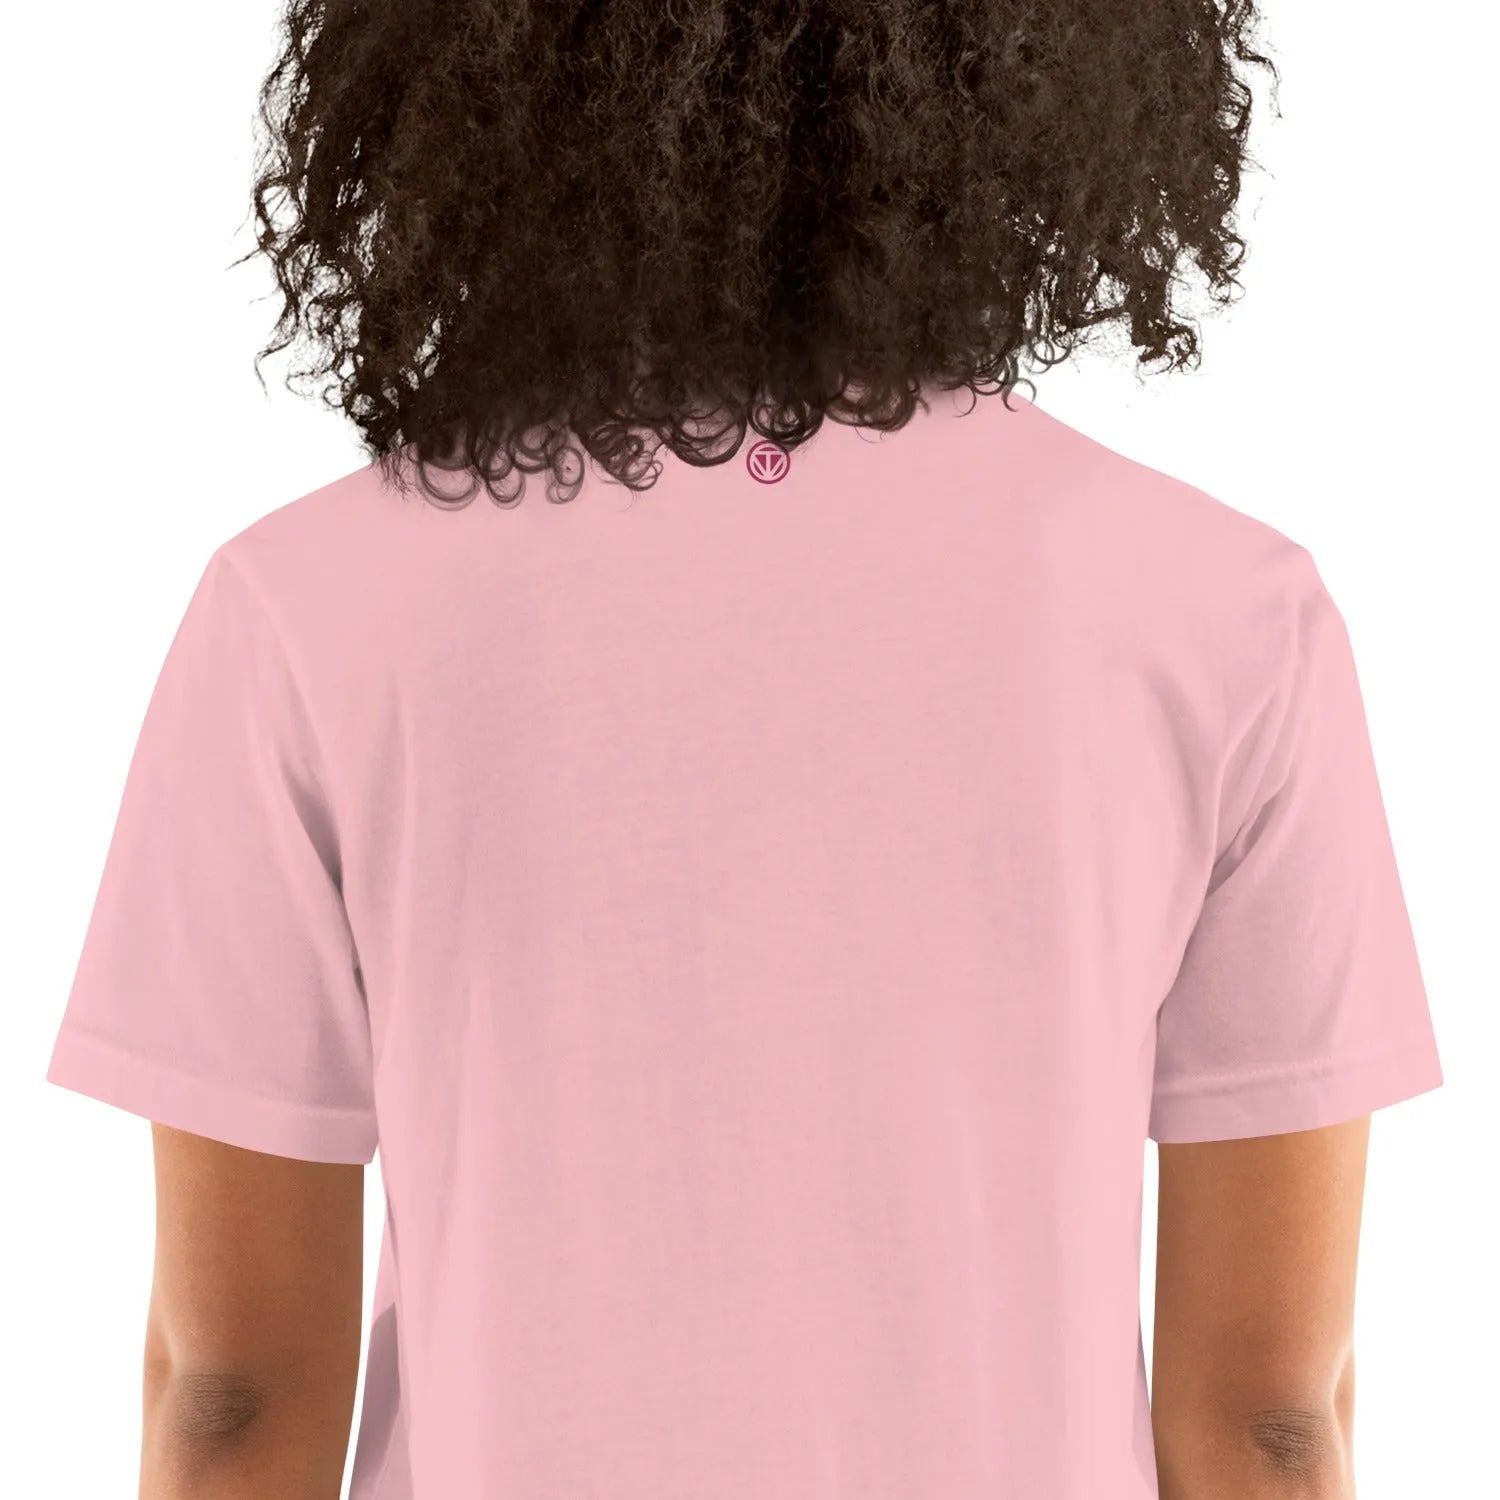 T-shirt en coton pour femme VIBES  (rose)